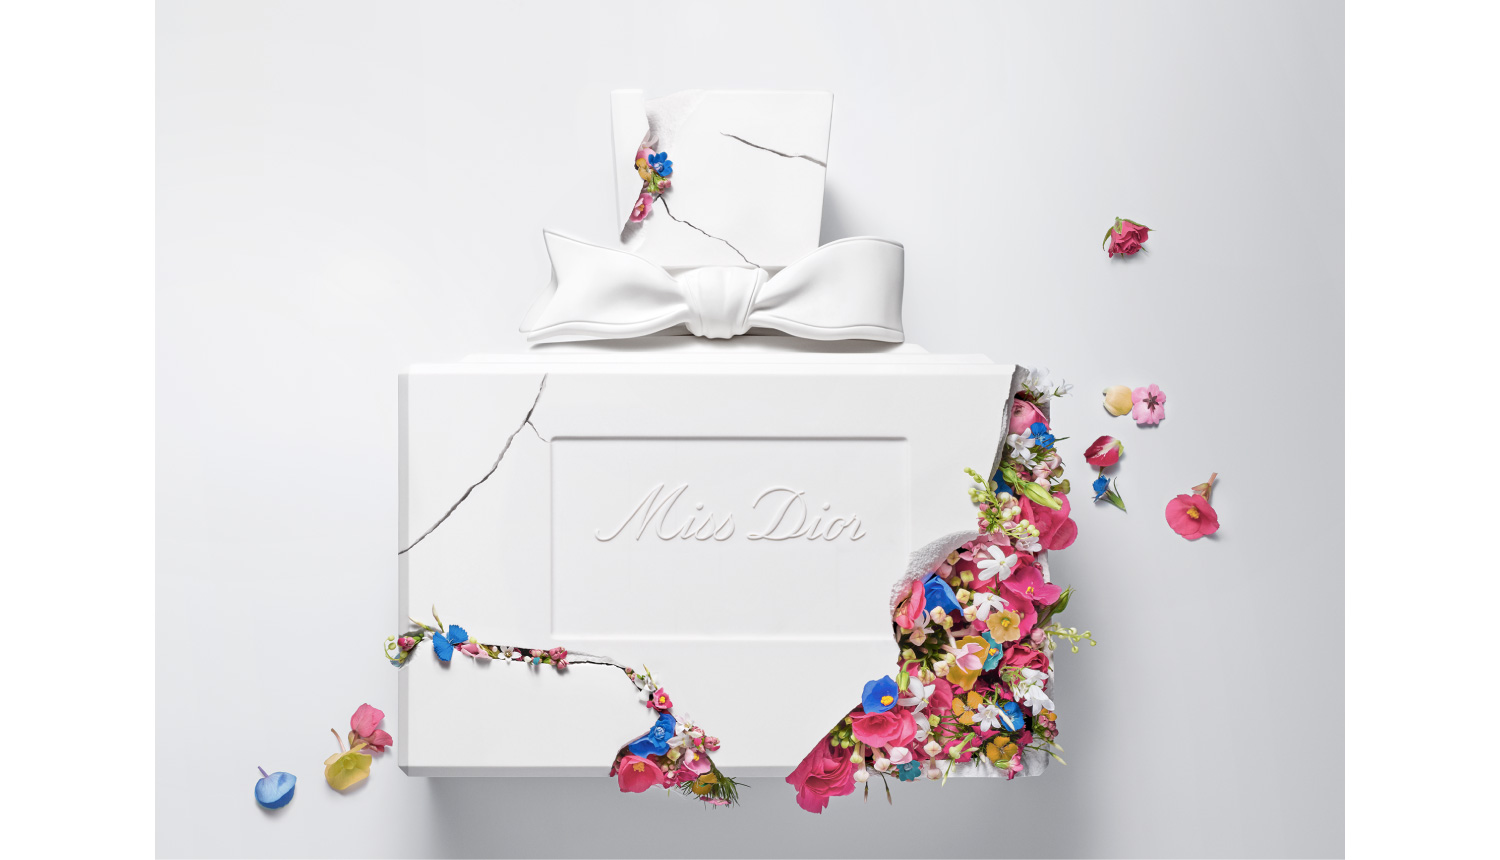 Valentine's Day Limited Edition Miss Dior Eau de Parfum Set